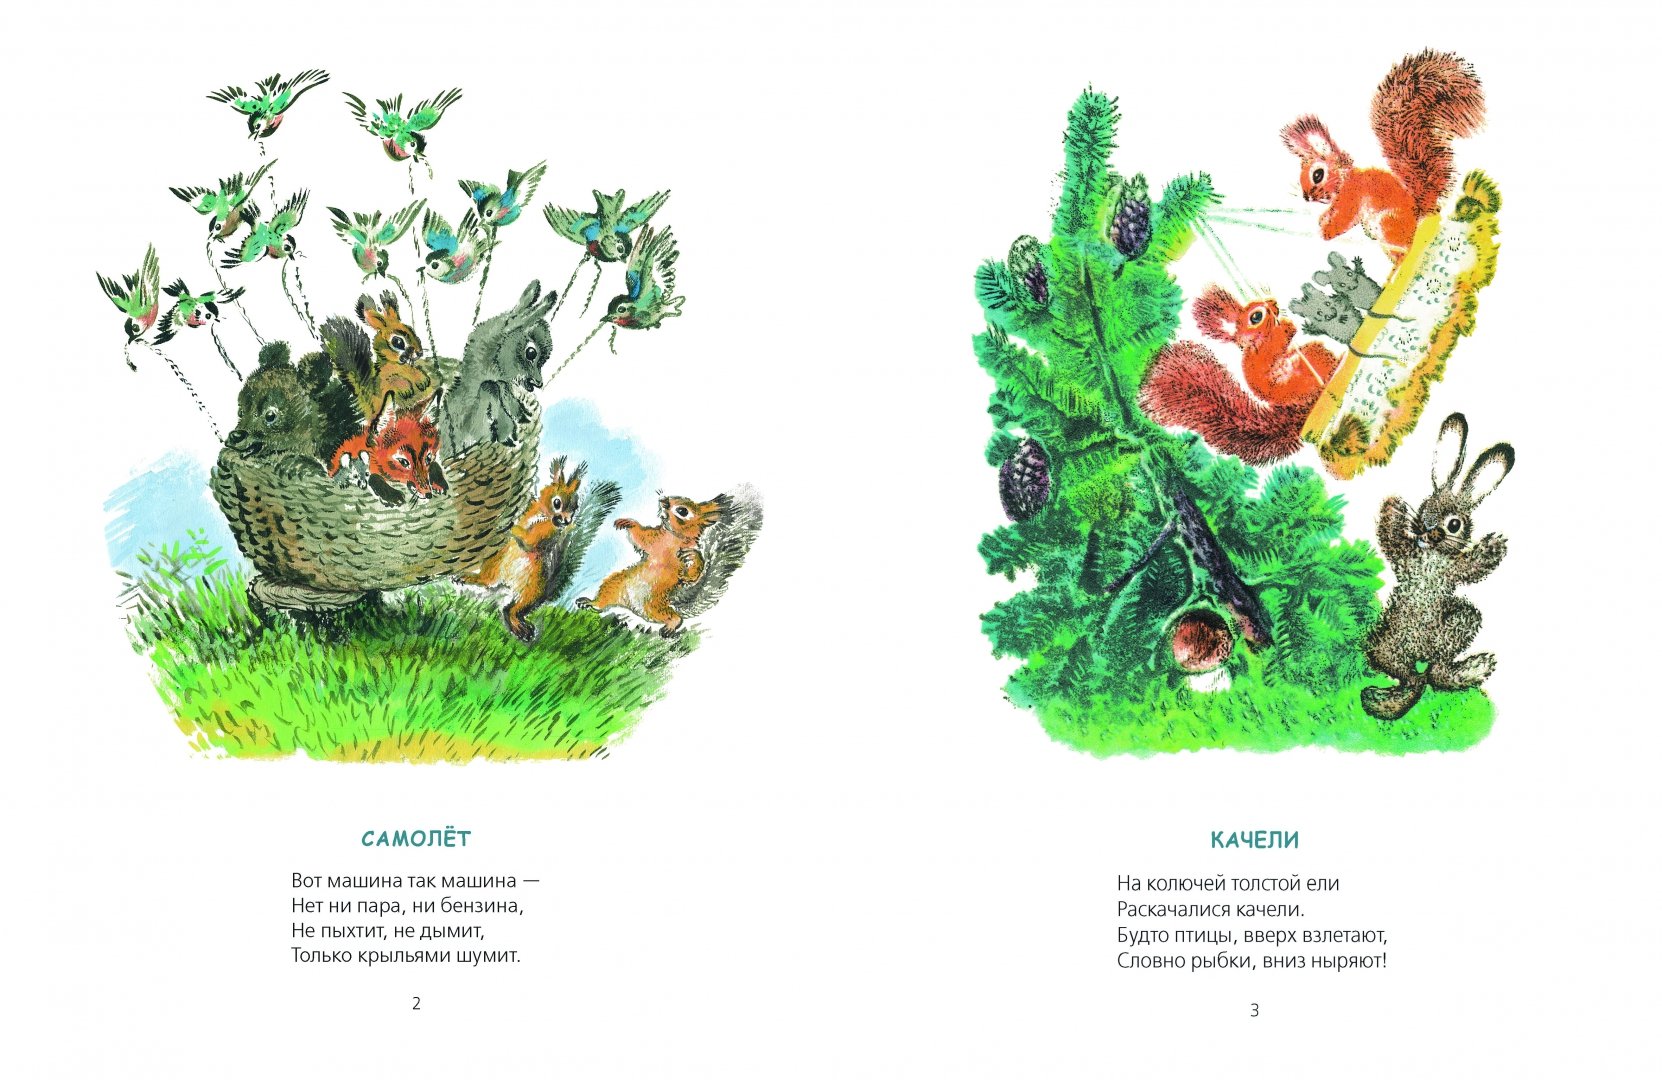 Теремок автор чарушин. Иллюстрации к книге шутки Чарушина. Иллюстрации по книгам Чарушина для детей.